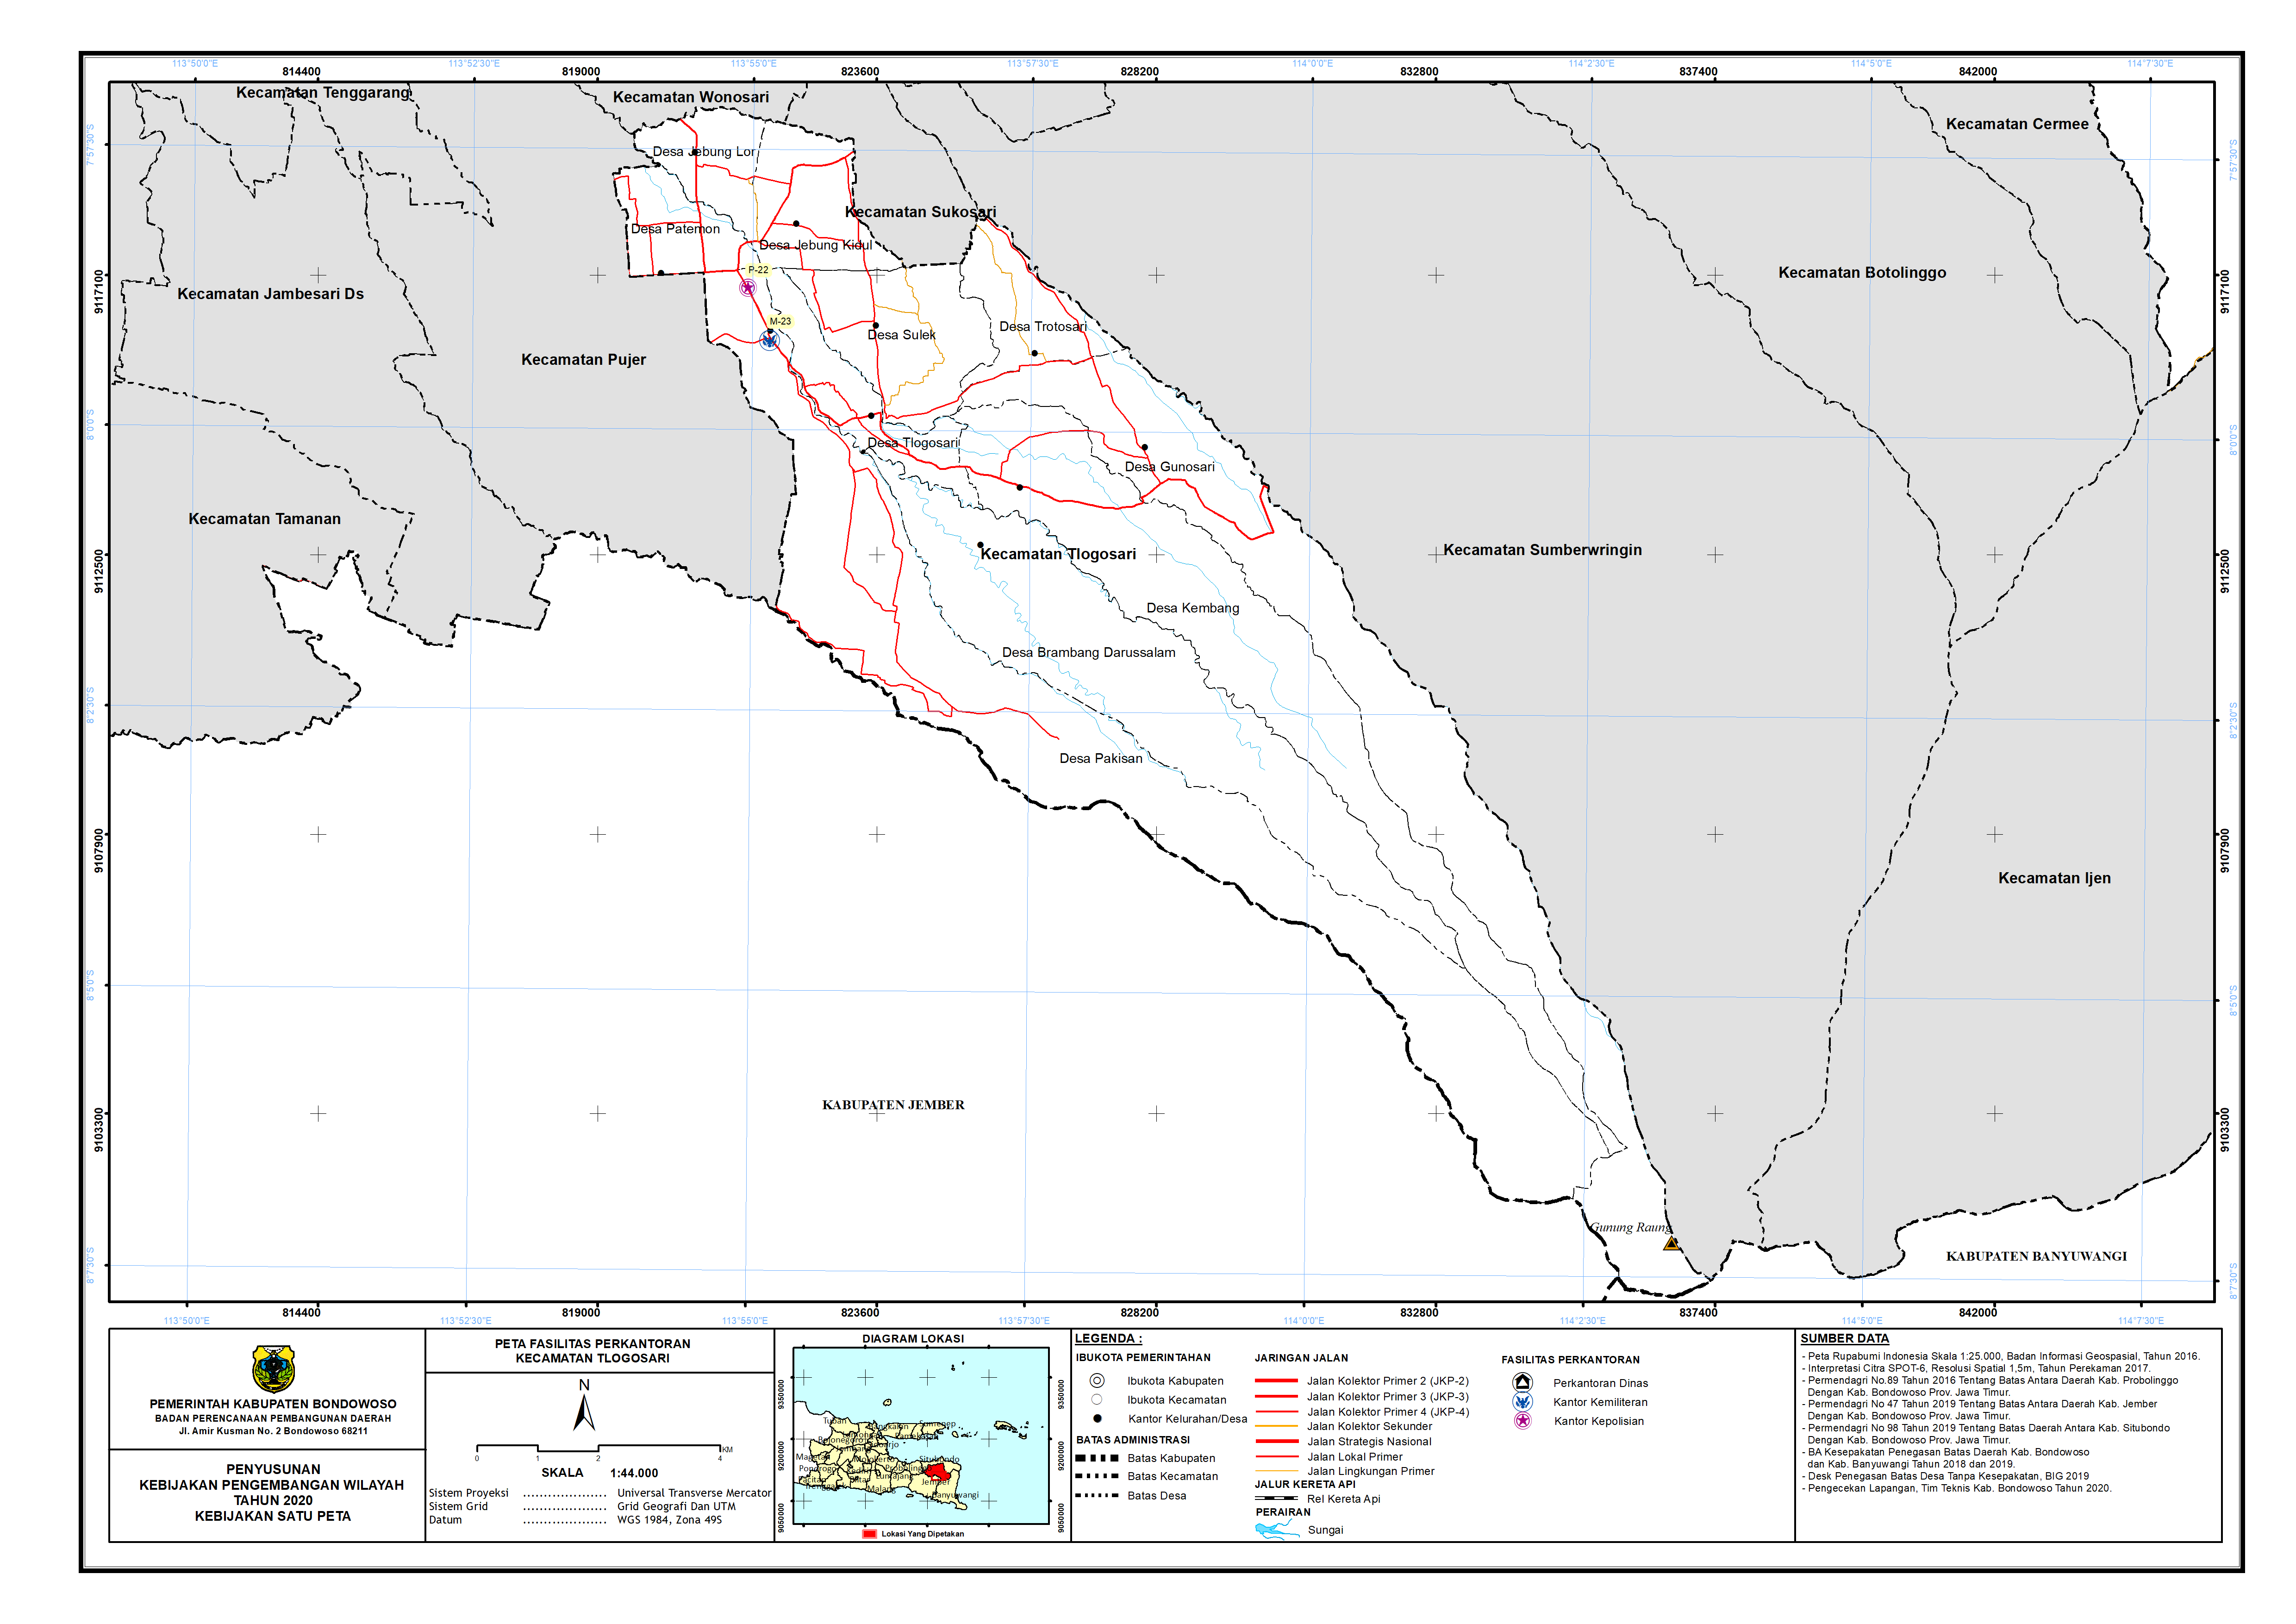 Peta Persebaran Perkantoran Kecamatan Tlogosari.png